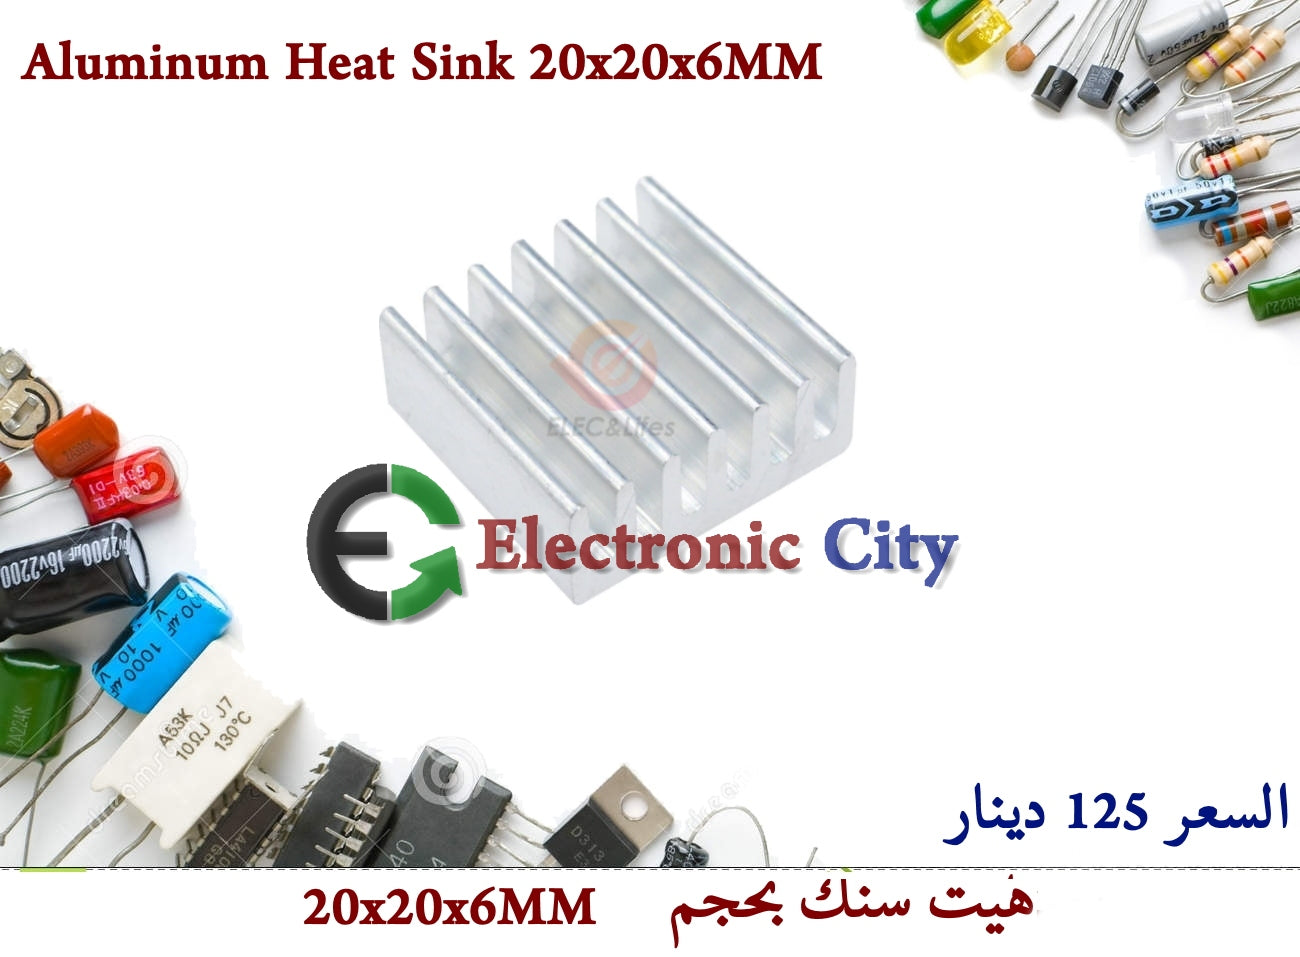 Aluminum Heat Sink 20x20x6MM 0506635